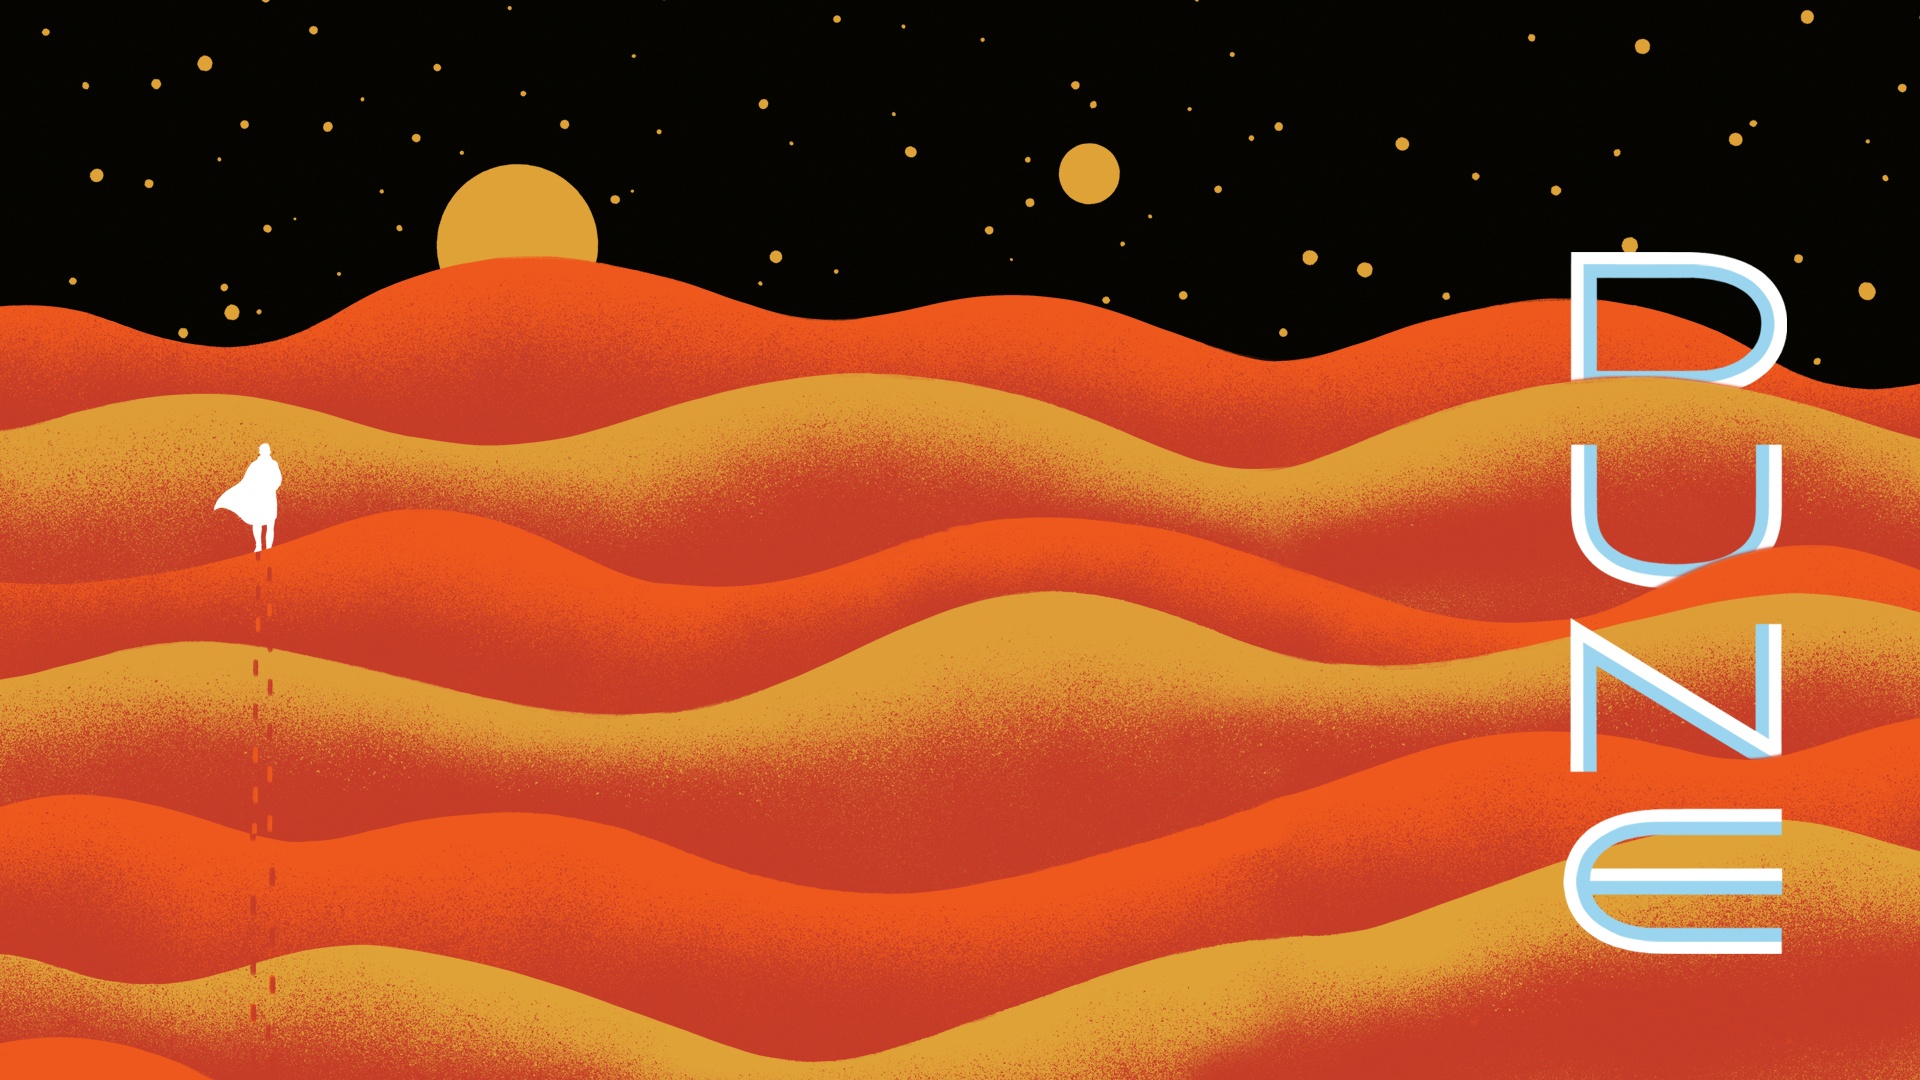 Dune free background